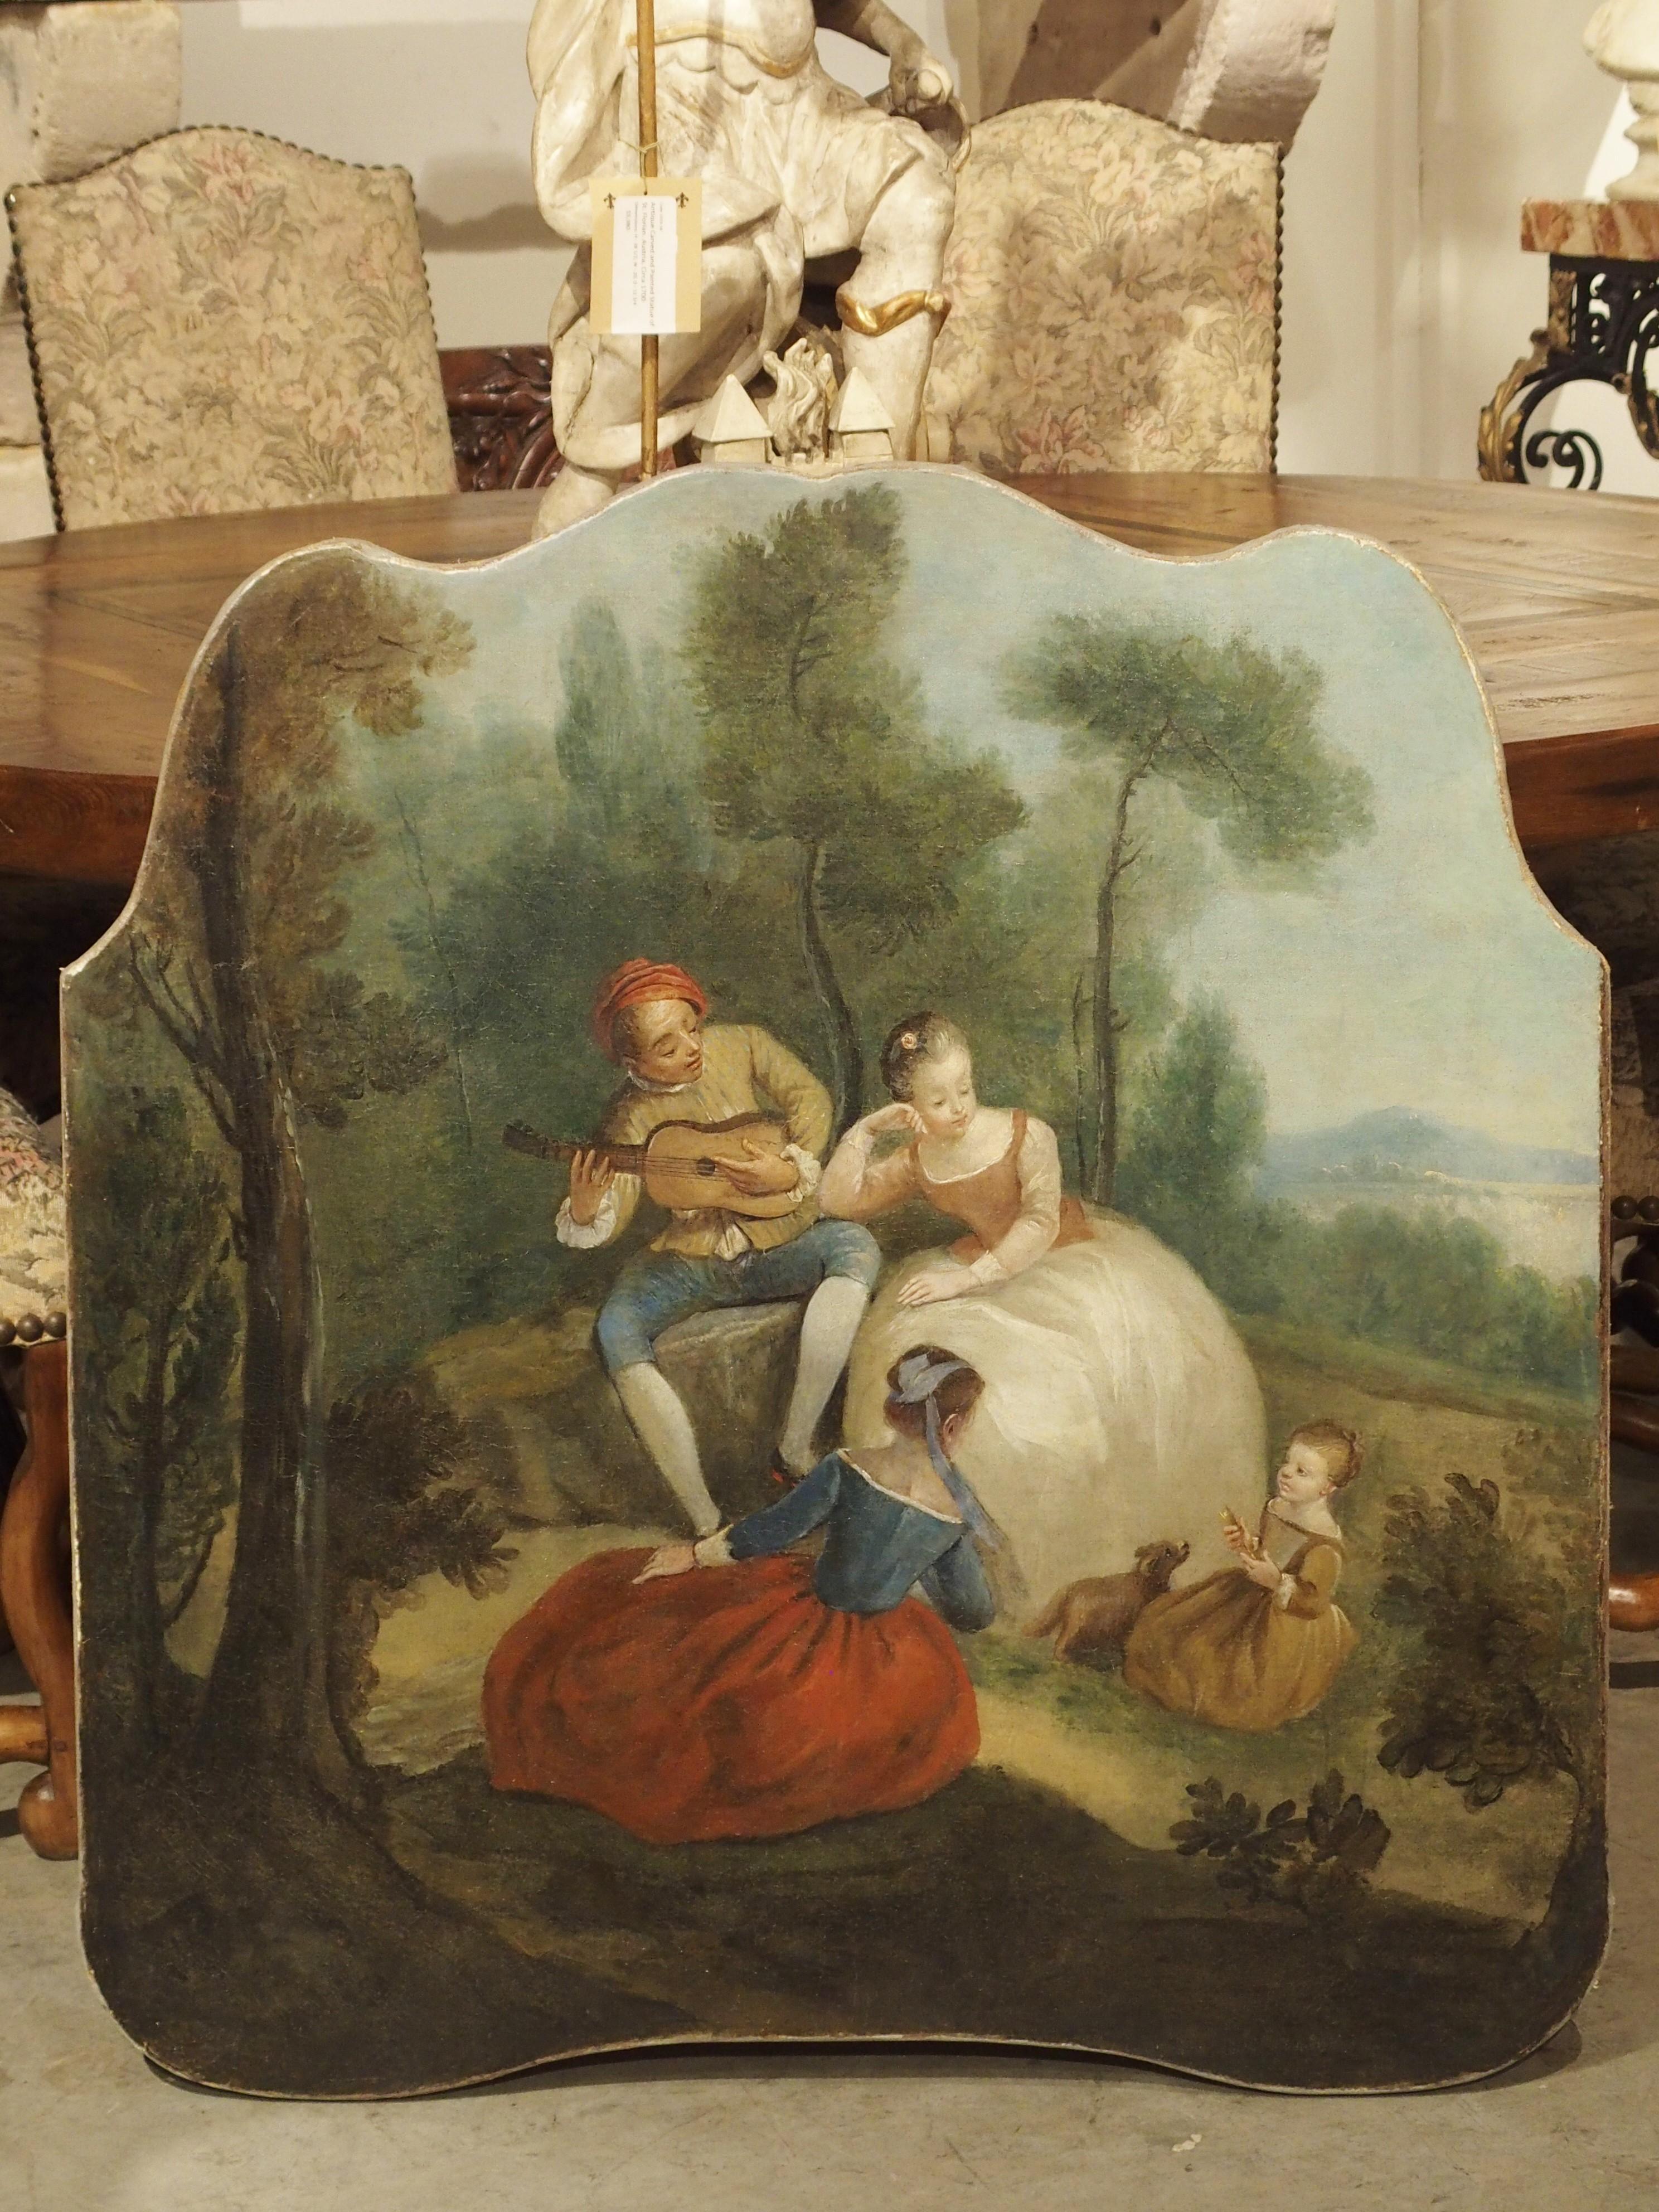 Cette peinture de genre colorée et joyeuse est originaire de France, vers 1770. Les peintures de genre représentent des personnes engagées dans des activités courantes, telles que le pique-nique, la promenade dans un parc ou des scènes romantiques.